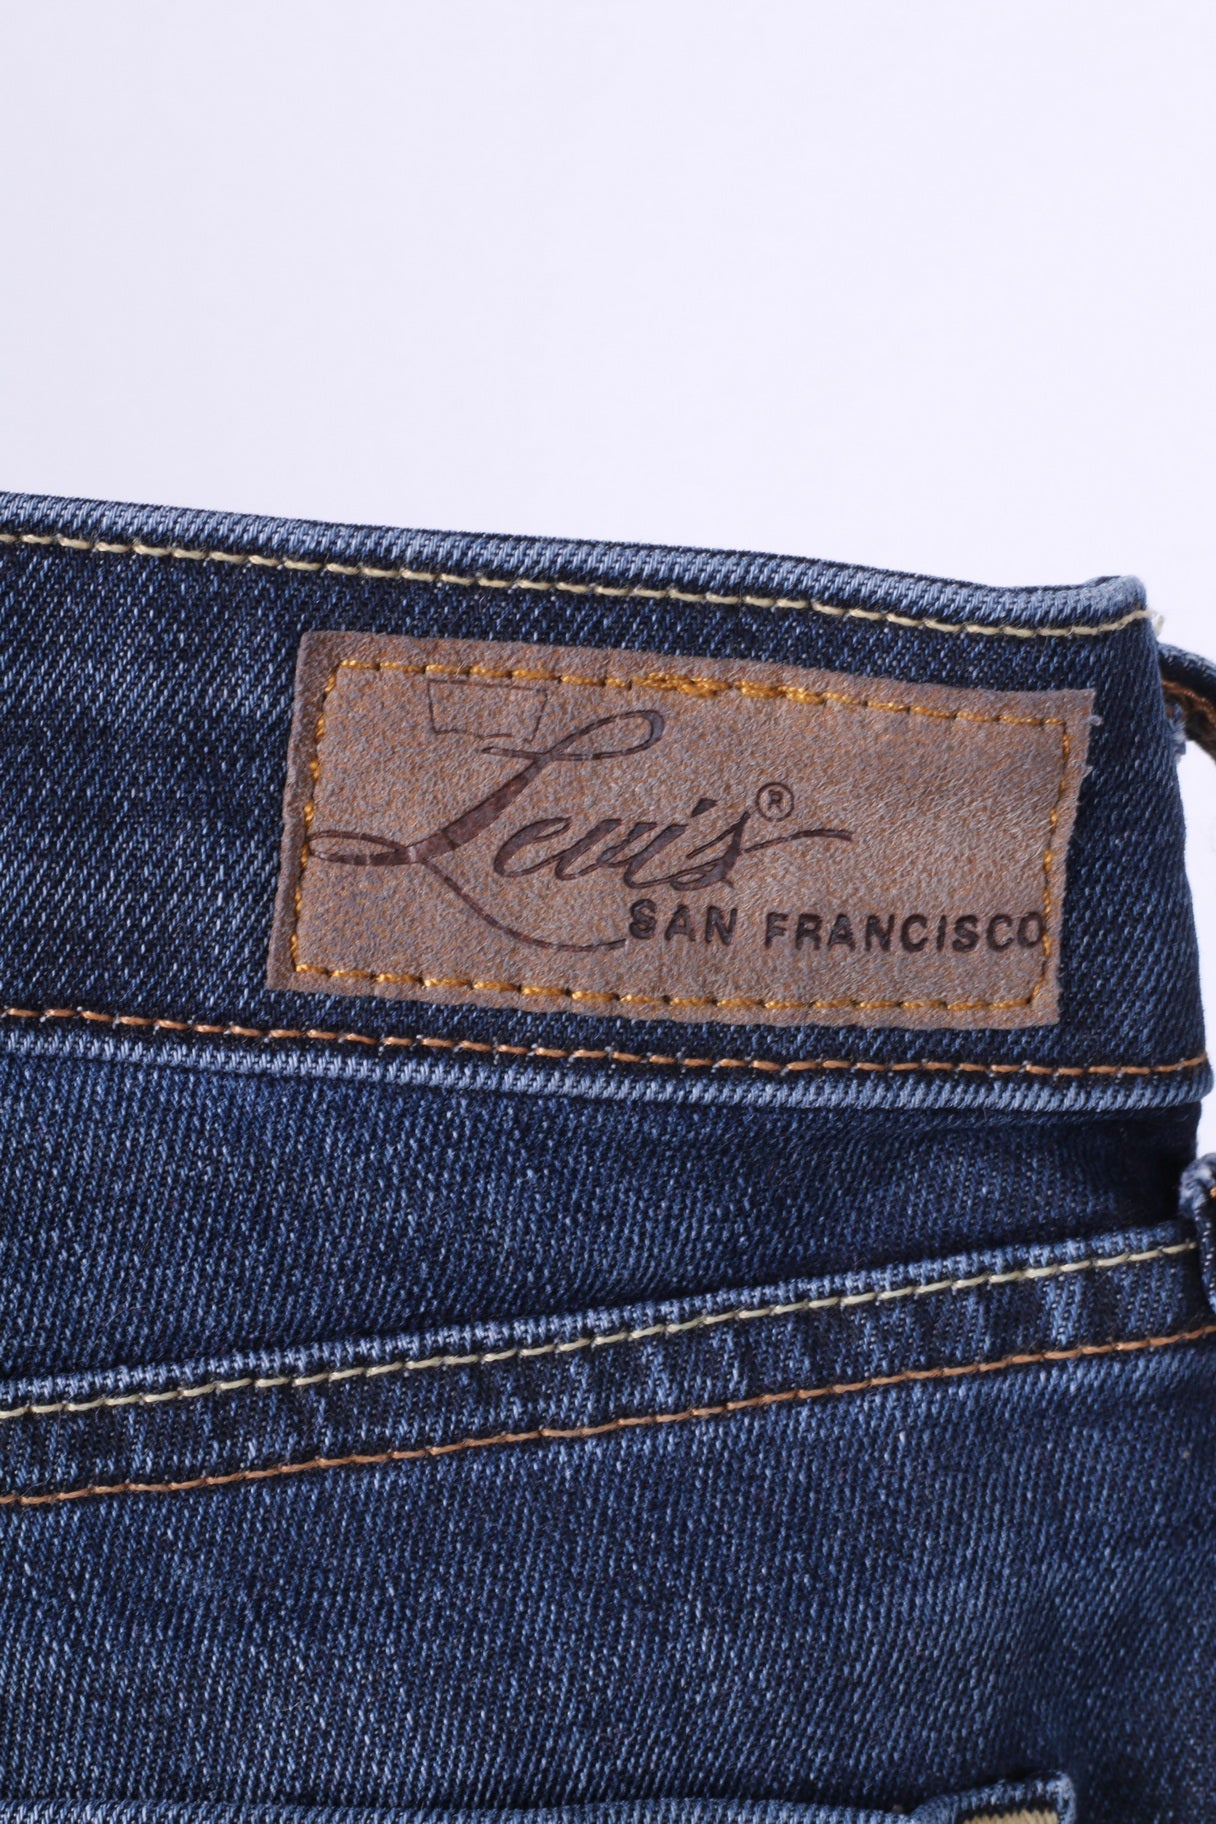 Levis San Francisco Womens 28 Trousers Denim Jeans Navy Denim Curve Straight Leg Cotton